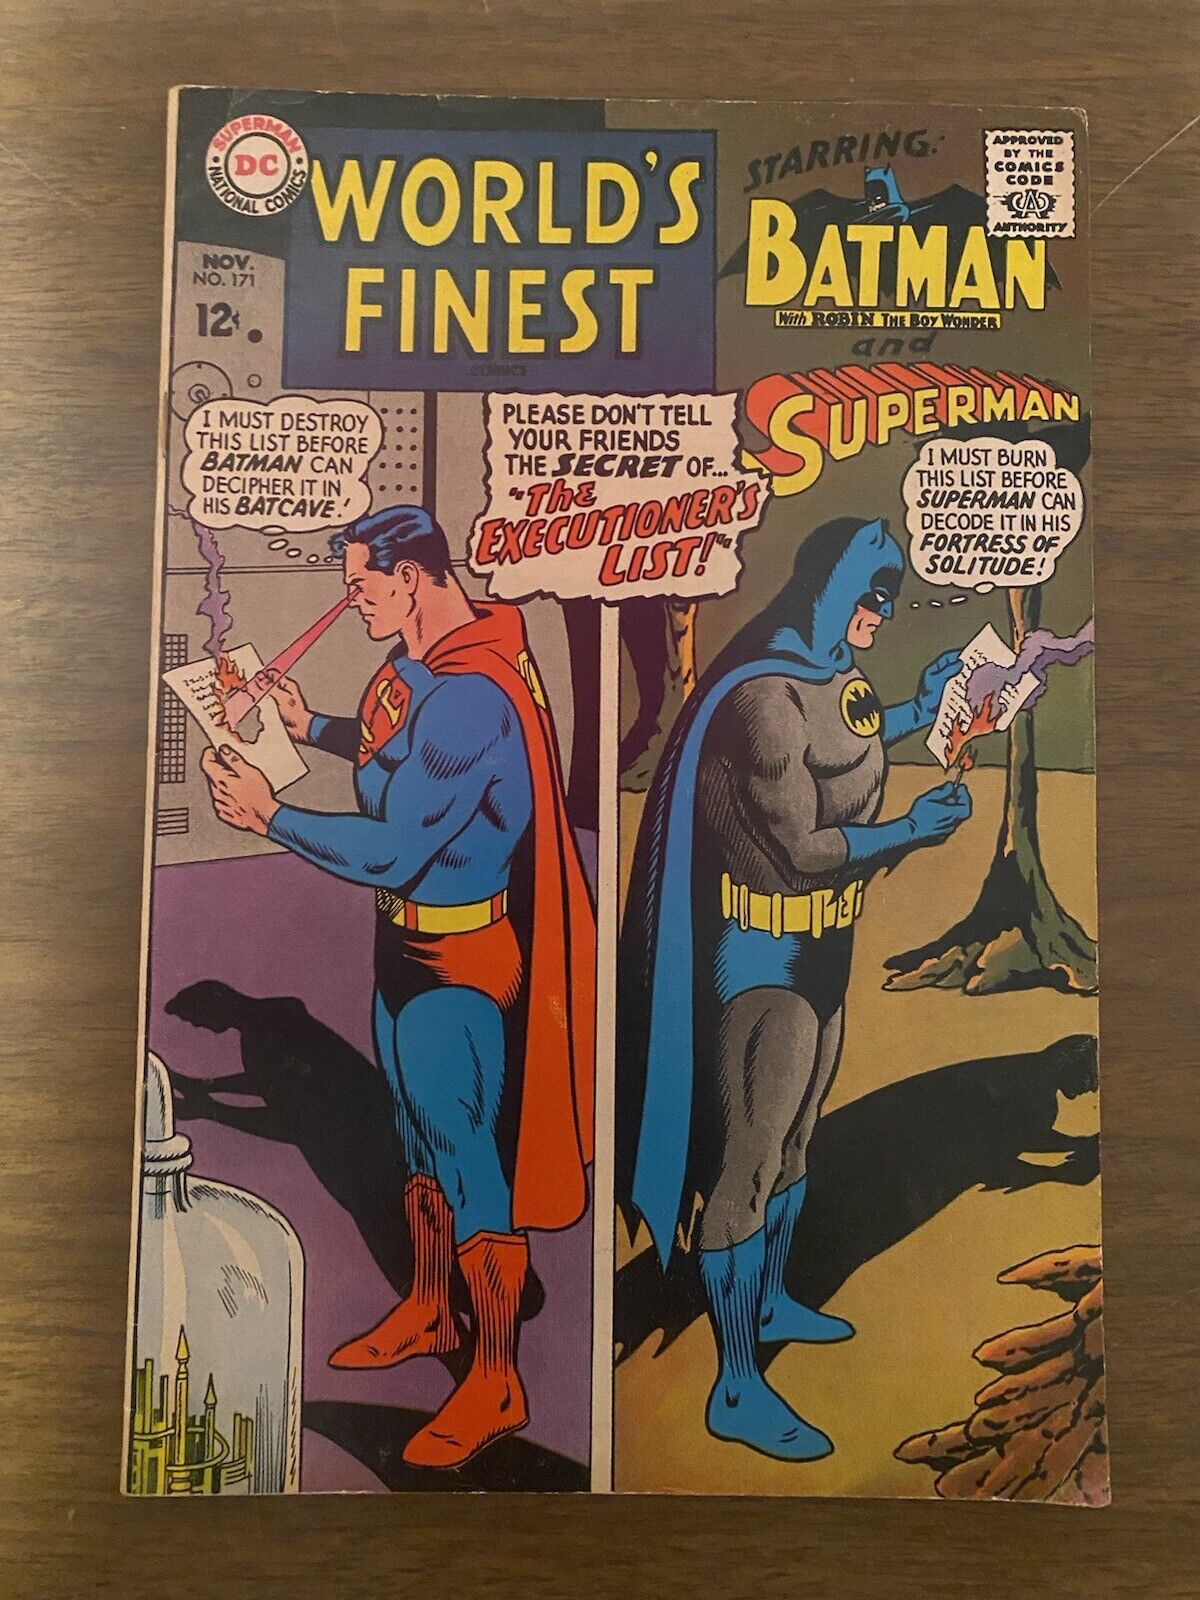 WORLD\'S FINEST — DC Comics No. 171 Batman & Superman Nov. 1967